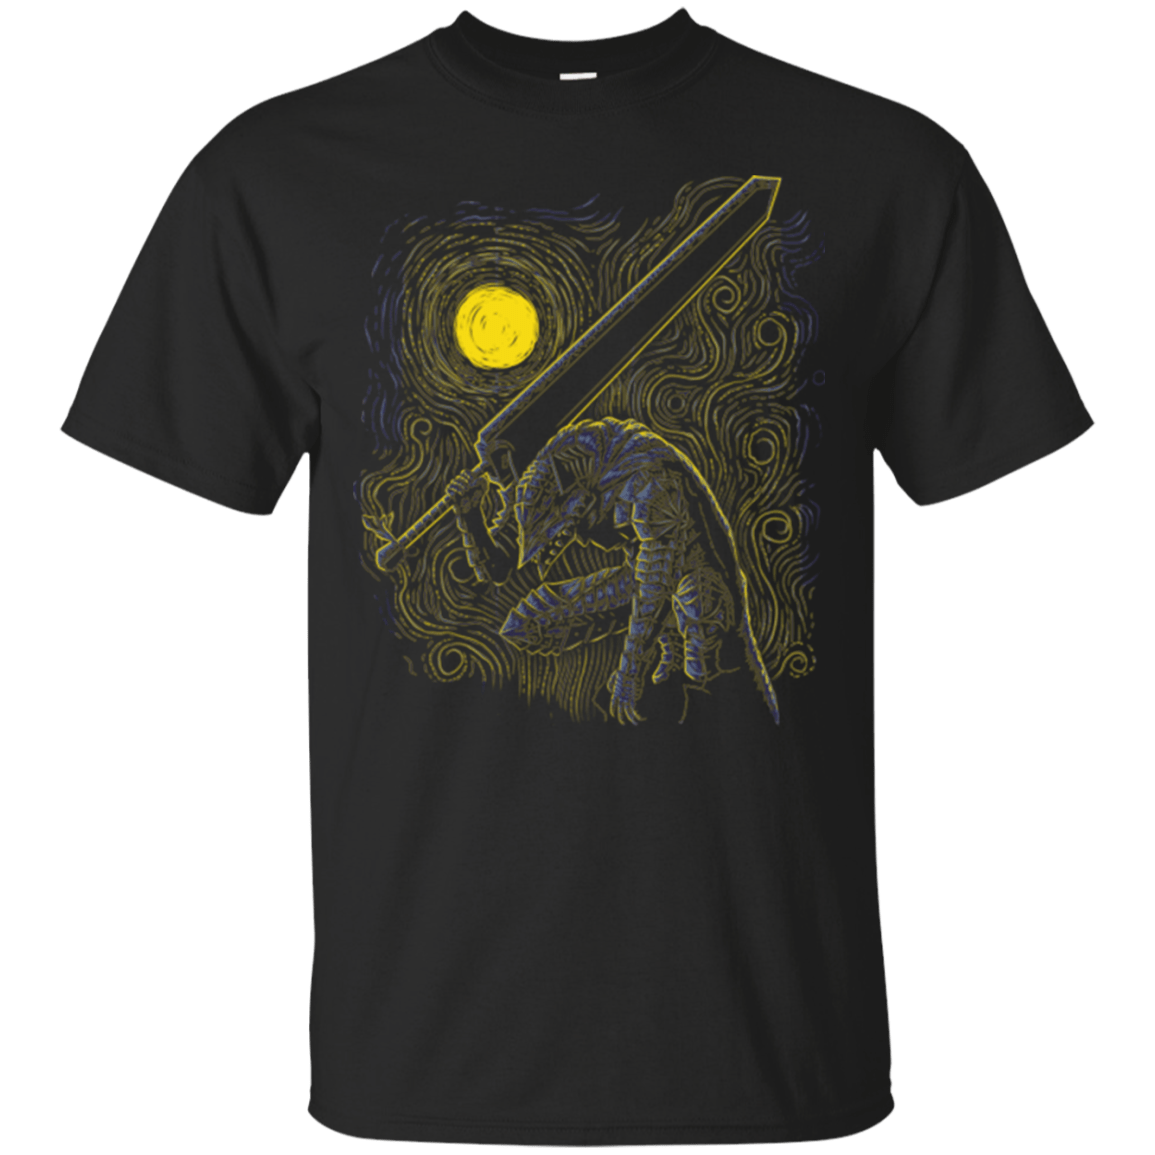 T-Shirts Black / Small Impressionist Swordman T-Shirt